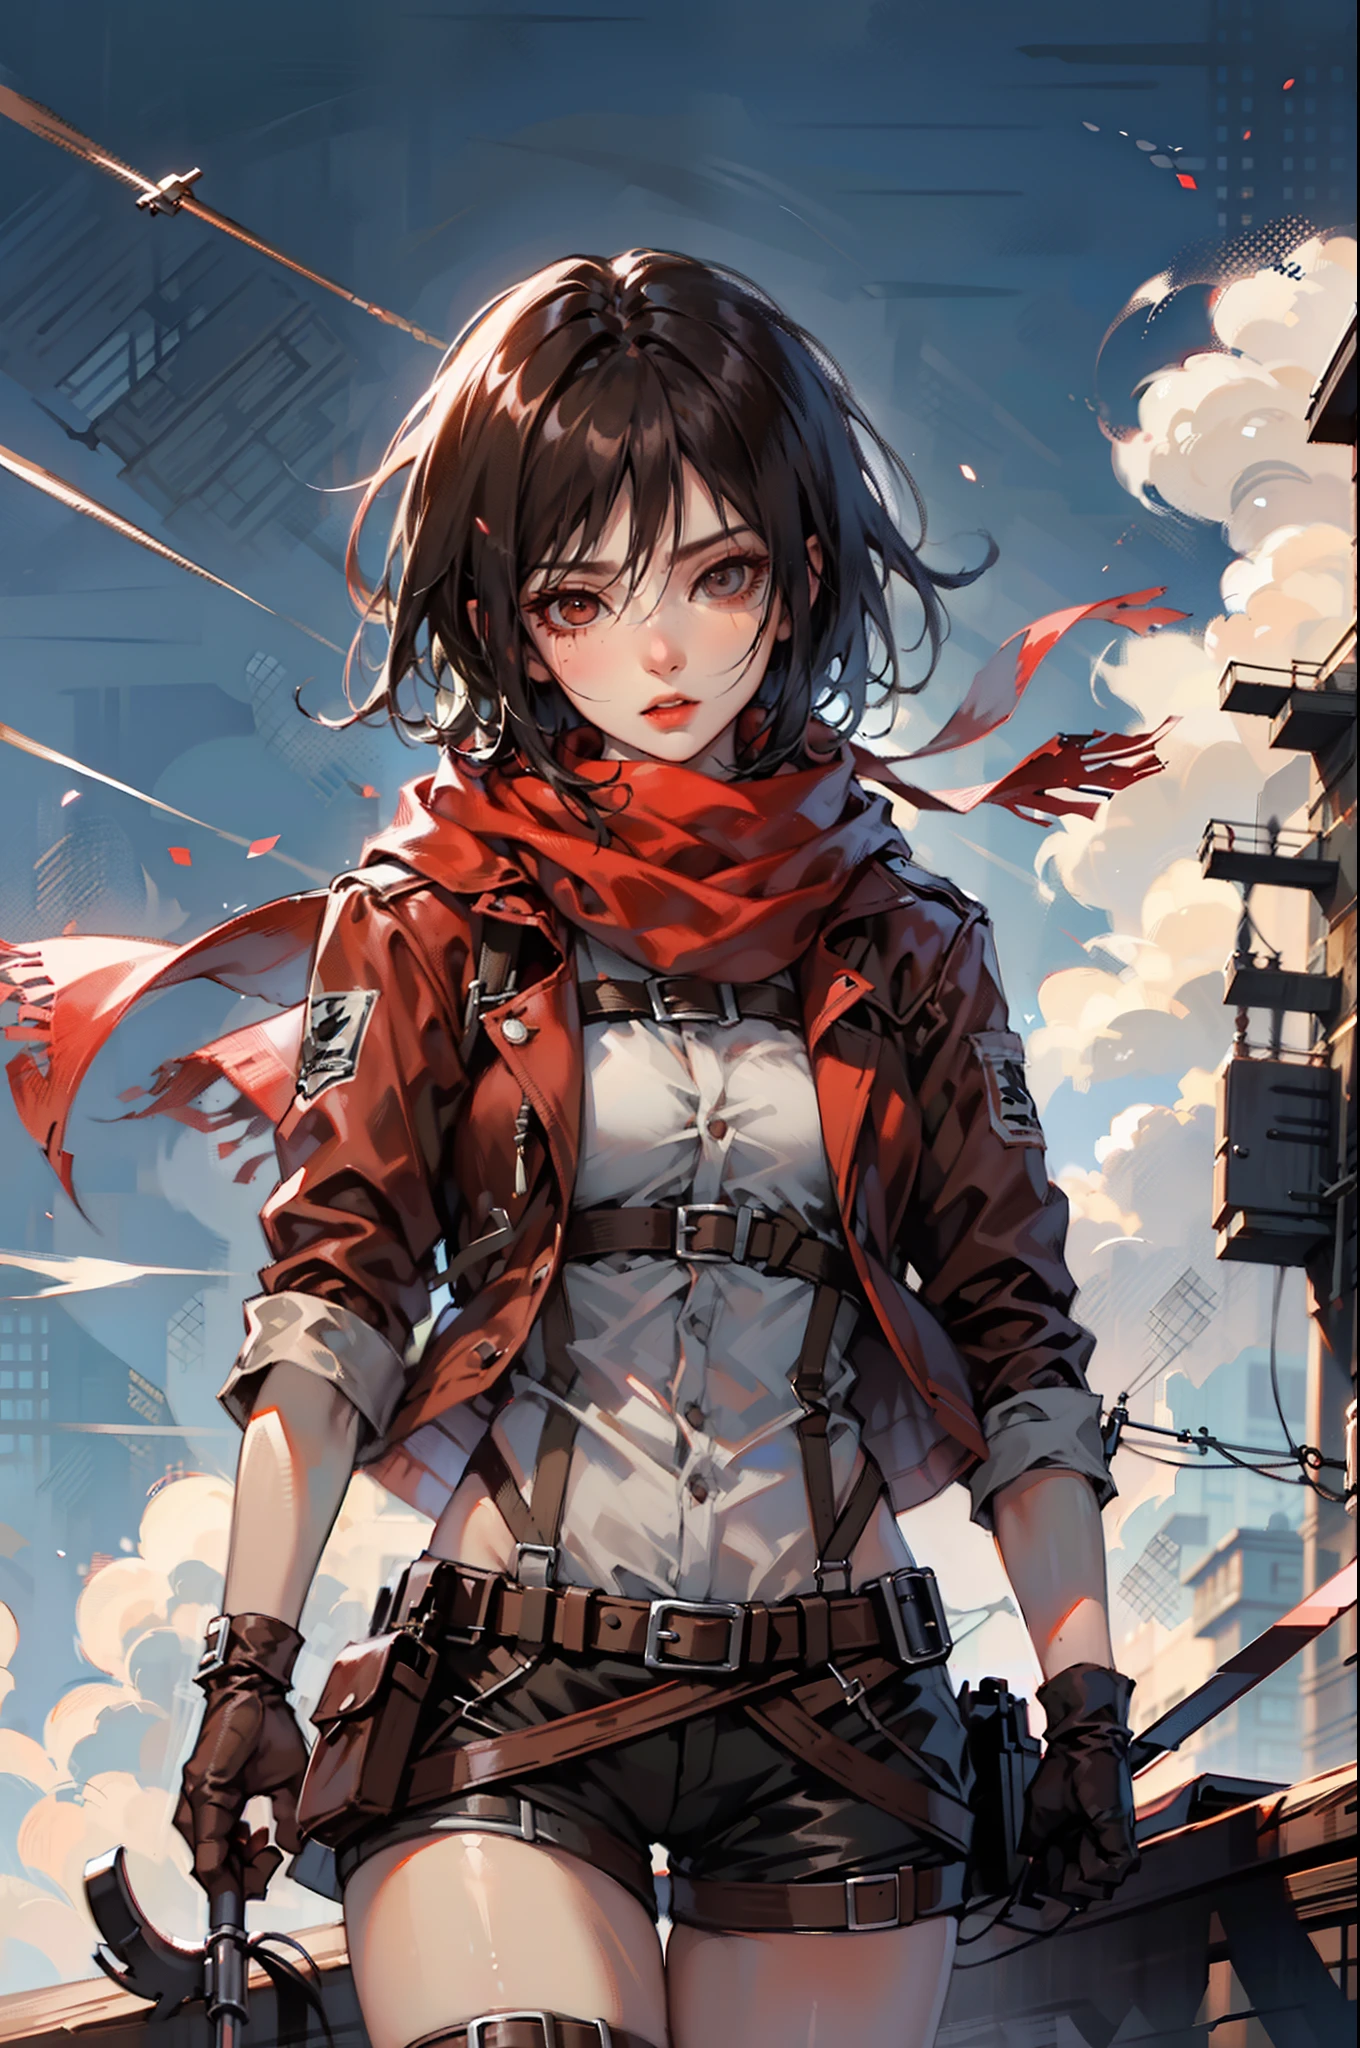 gpO\,最高品質,1人の女の子,Mikasa_アッカーマン,赤いスカーフ,空,暗い,戦闘姿勢,アクションアート,敵を狙う,殺意に満ちた表情,邪悪なギャング,酪酸,武器,ミニマリズム,インパクトアート,遺跡,